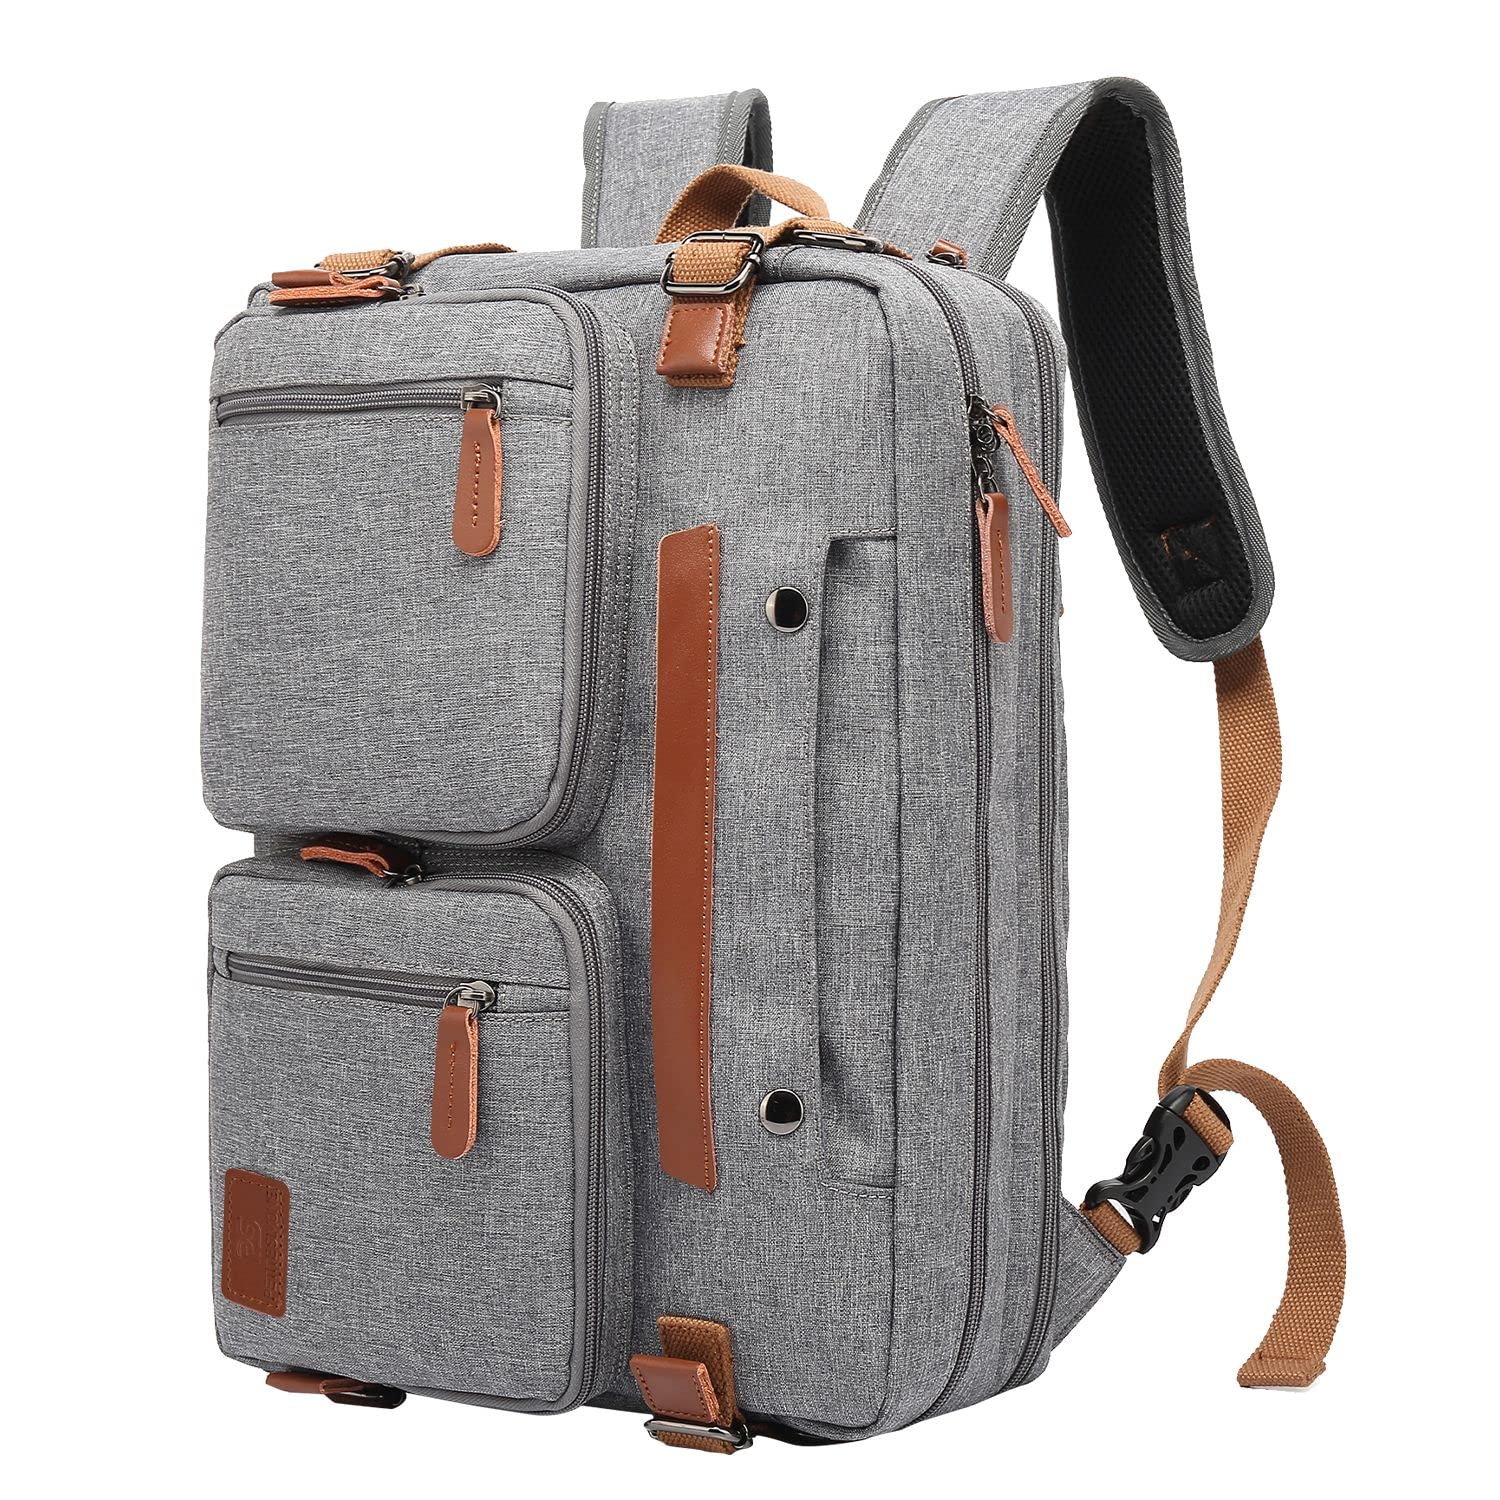 PETITE SIMONE 3 in 1 Computer Bag for Men, 17.3 Inch Laptop Backpack for Men, Work Bag for Men, Work Briefcase, Laptop Bag